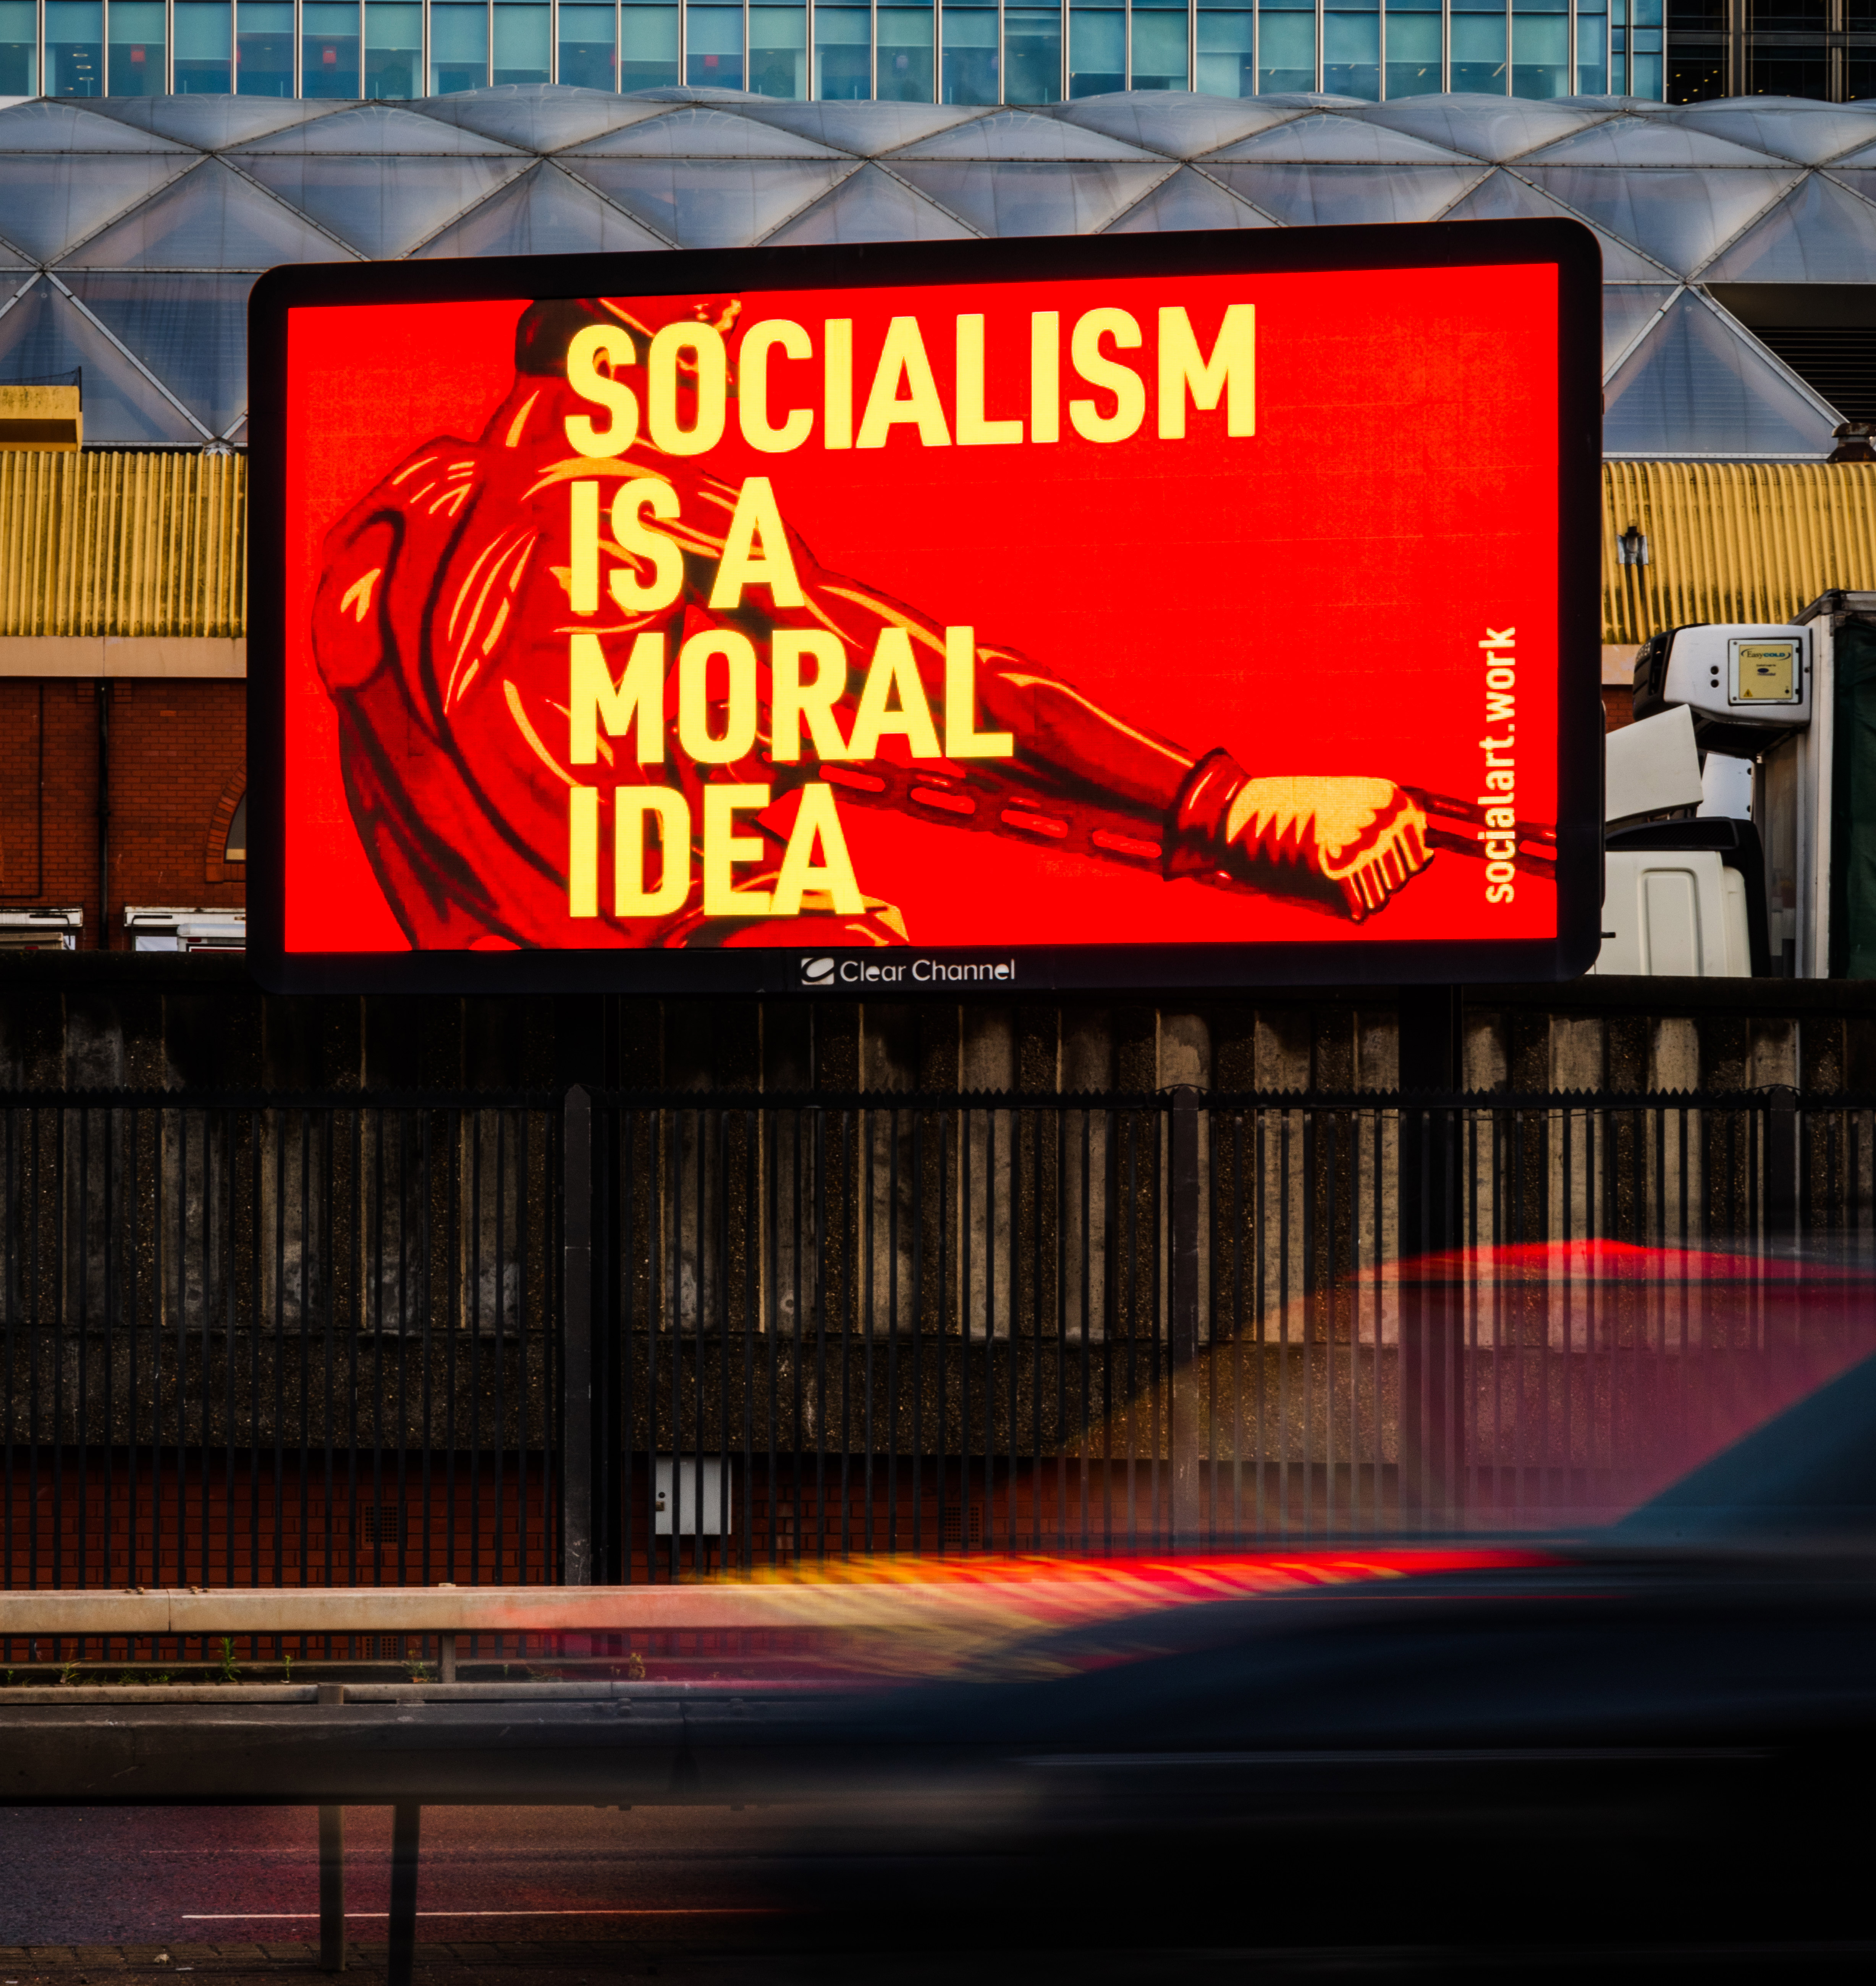 Socialism is a moral idea